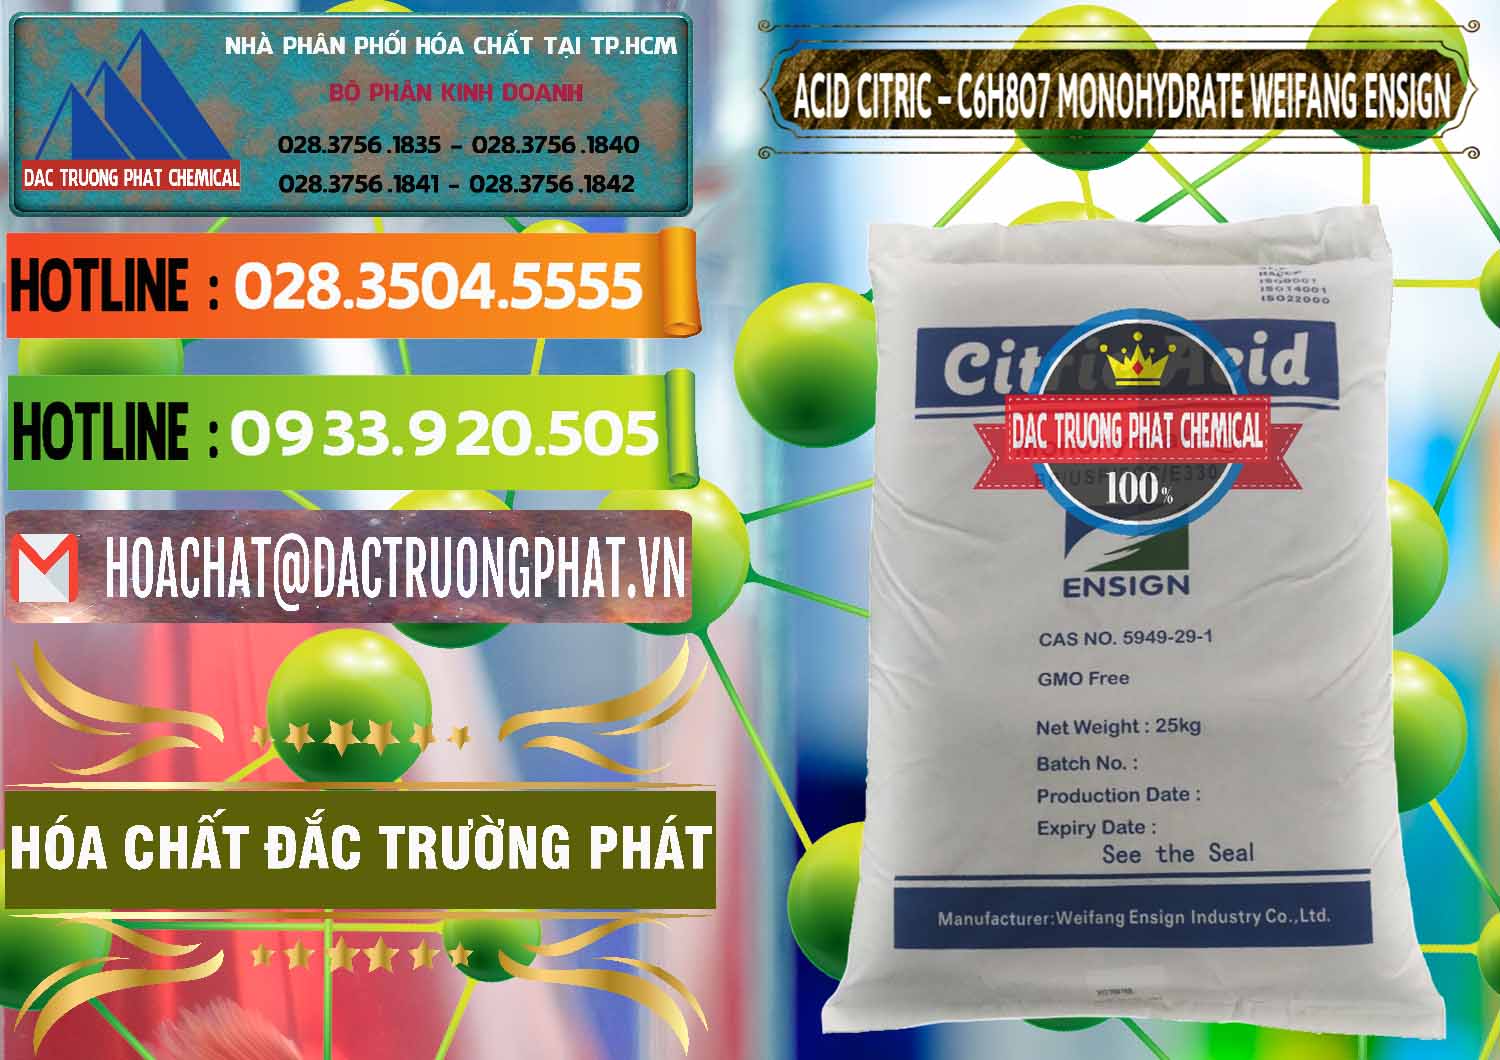 Bán & phân phối Acid Citric - Axit Citric Monohydrate Weifang Trung Quốc China - 0009 - Cty nhập khẩu - phân phối hóa chất tại TP.HCM - cungcaphoachat.com.vn